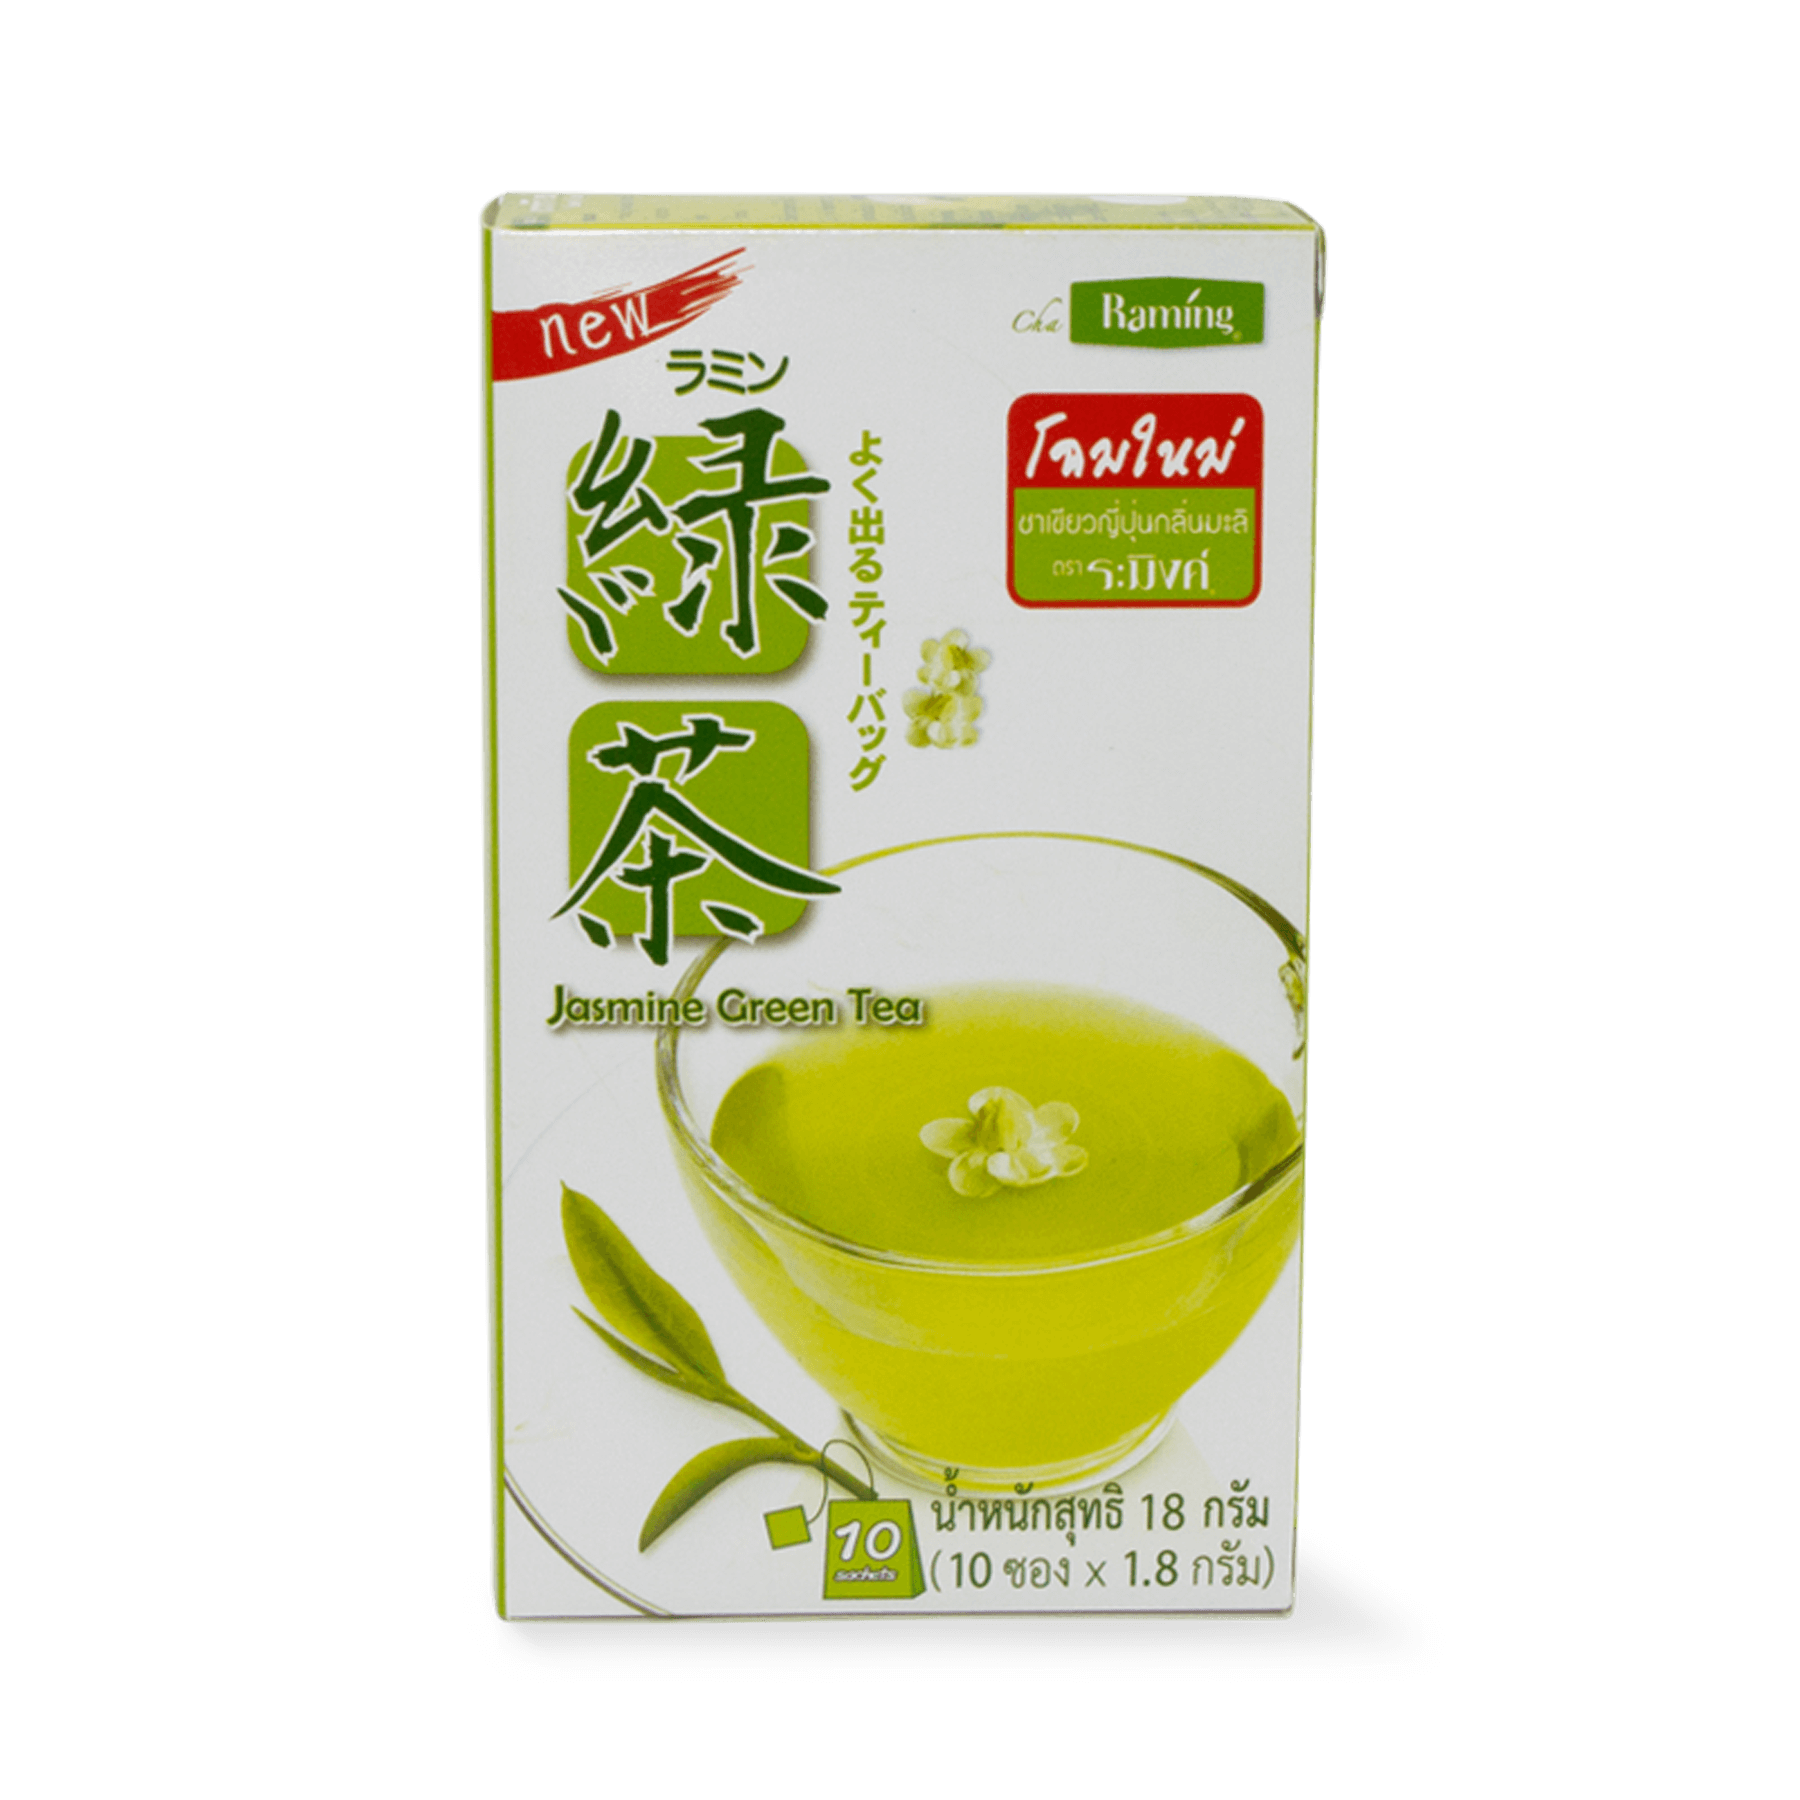 ชาระมิงค์ชาเขียวญี่ปุ่นกลิ่นมะลิ - Raming Tea